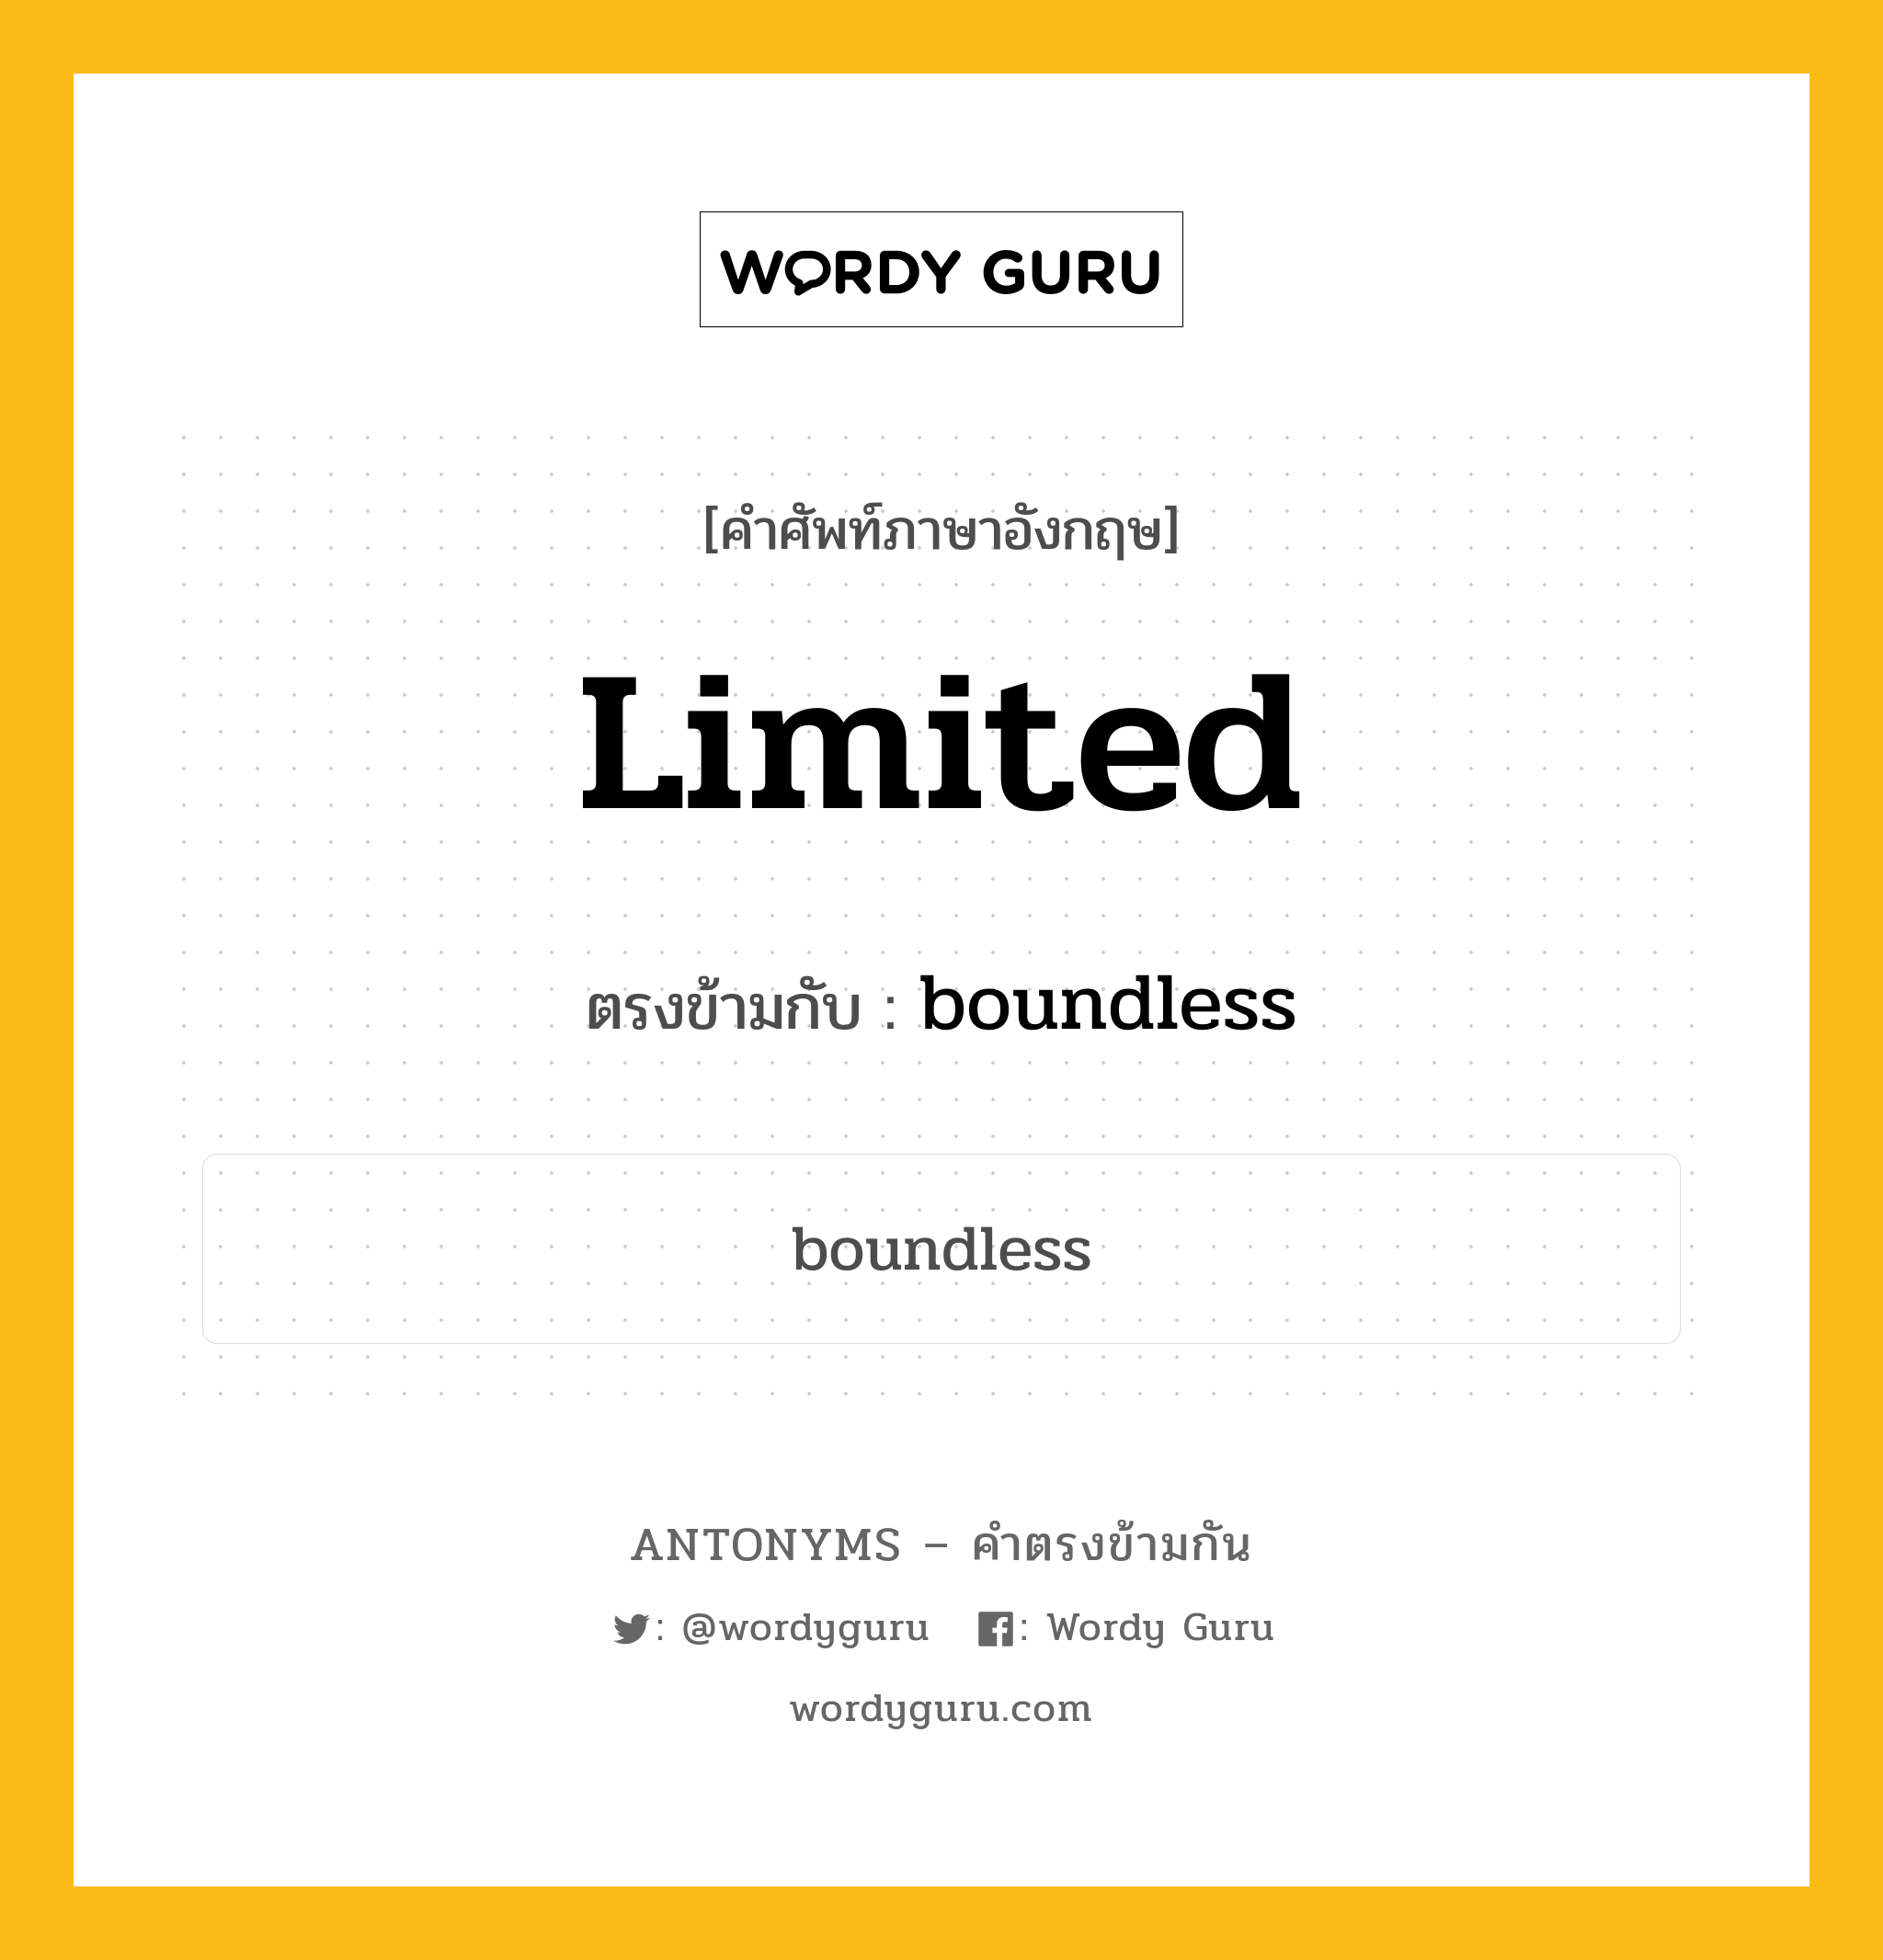 limited เป็นคำตรงข้ามกับคำไหนบ้าง?, คำศัพท์ภาษาอังกฤษ limited ตรงข้ามกับ boundless หมวด boundless